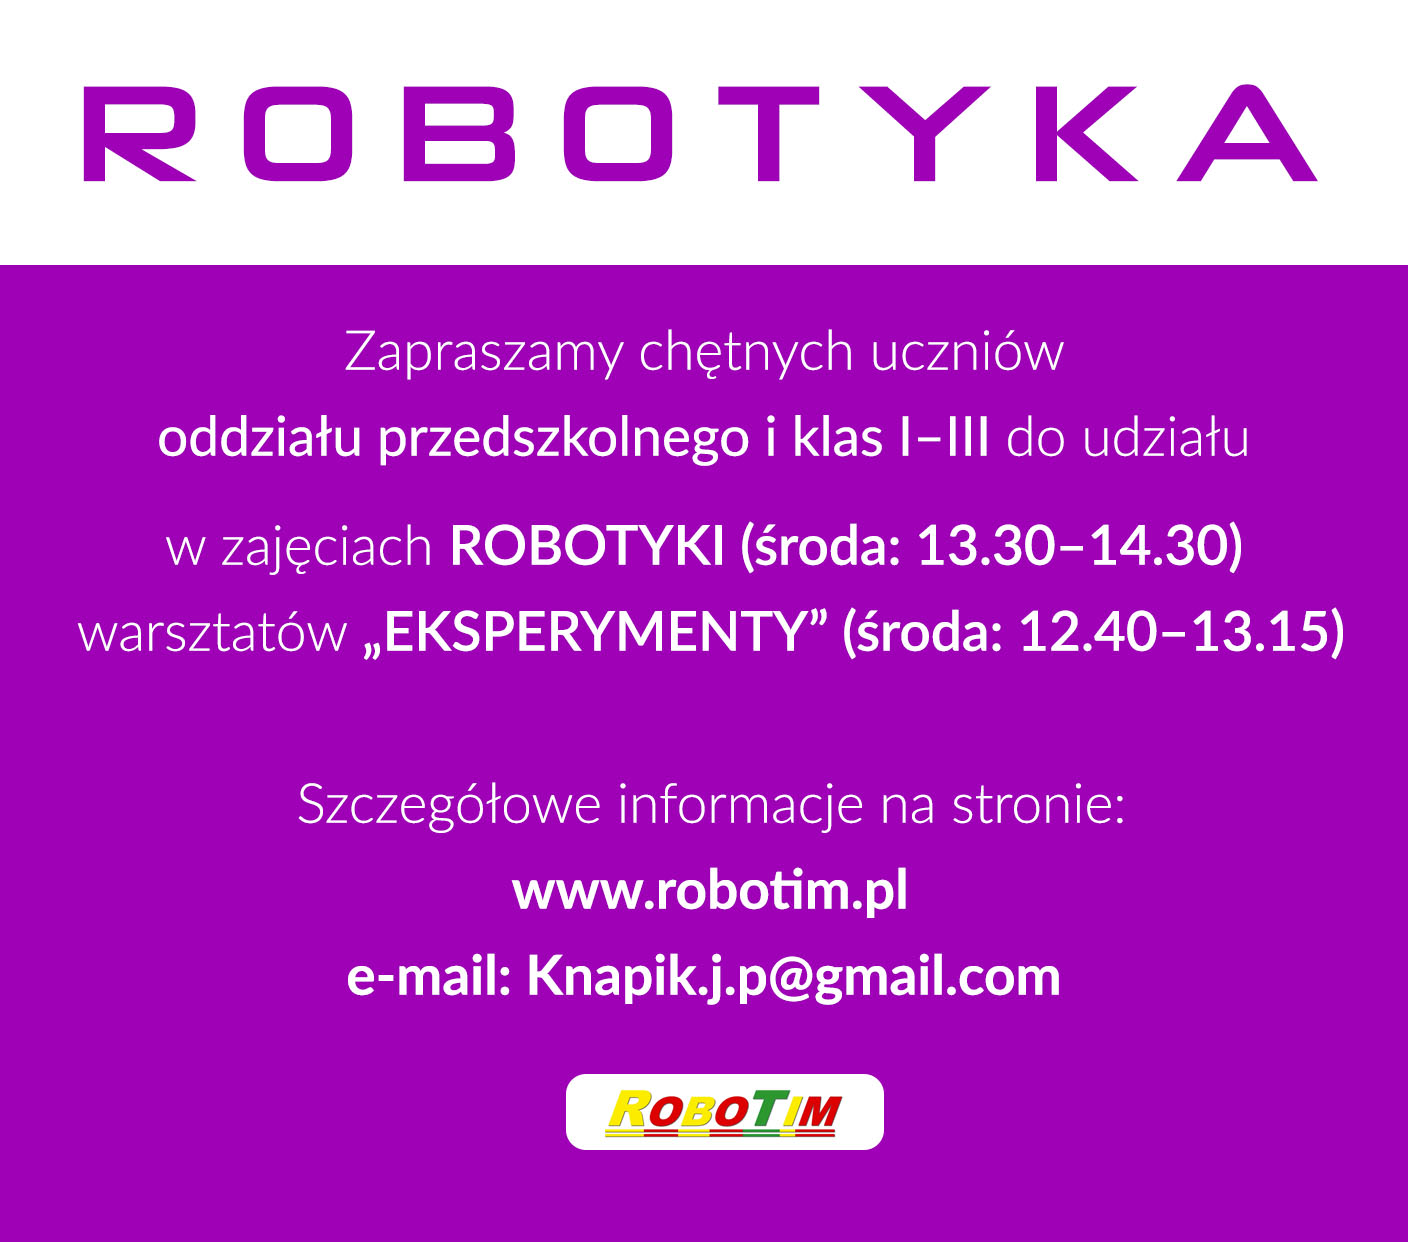 robotyka2018